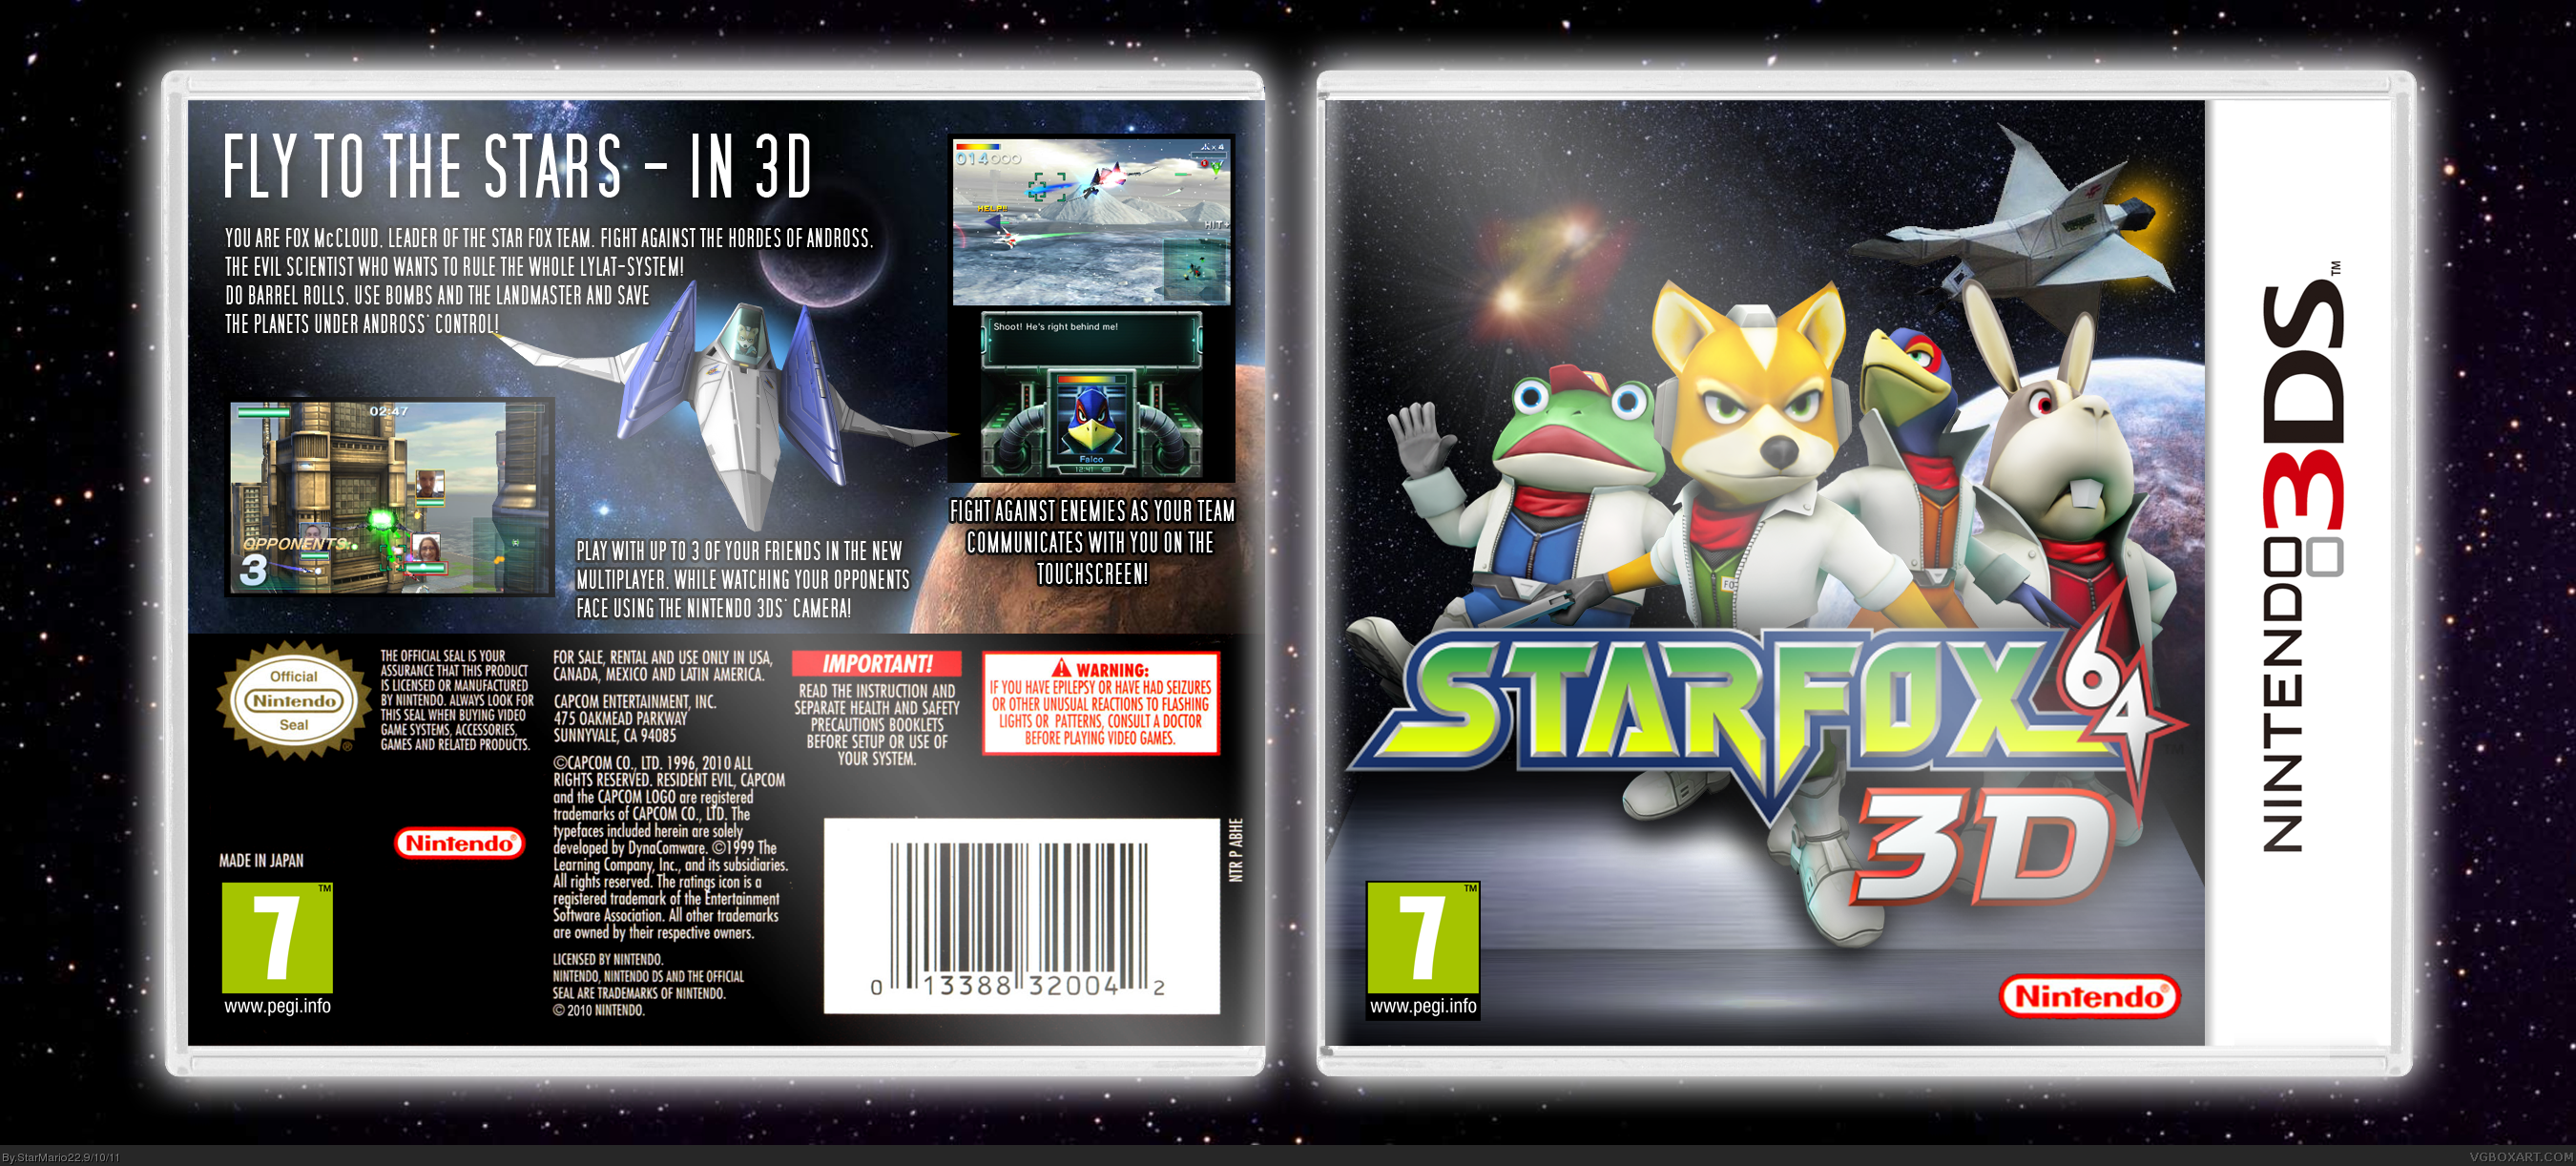 Star Fox 64 3D box cover